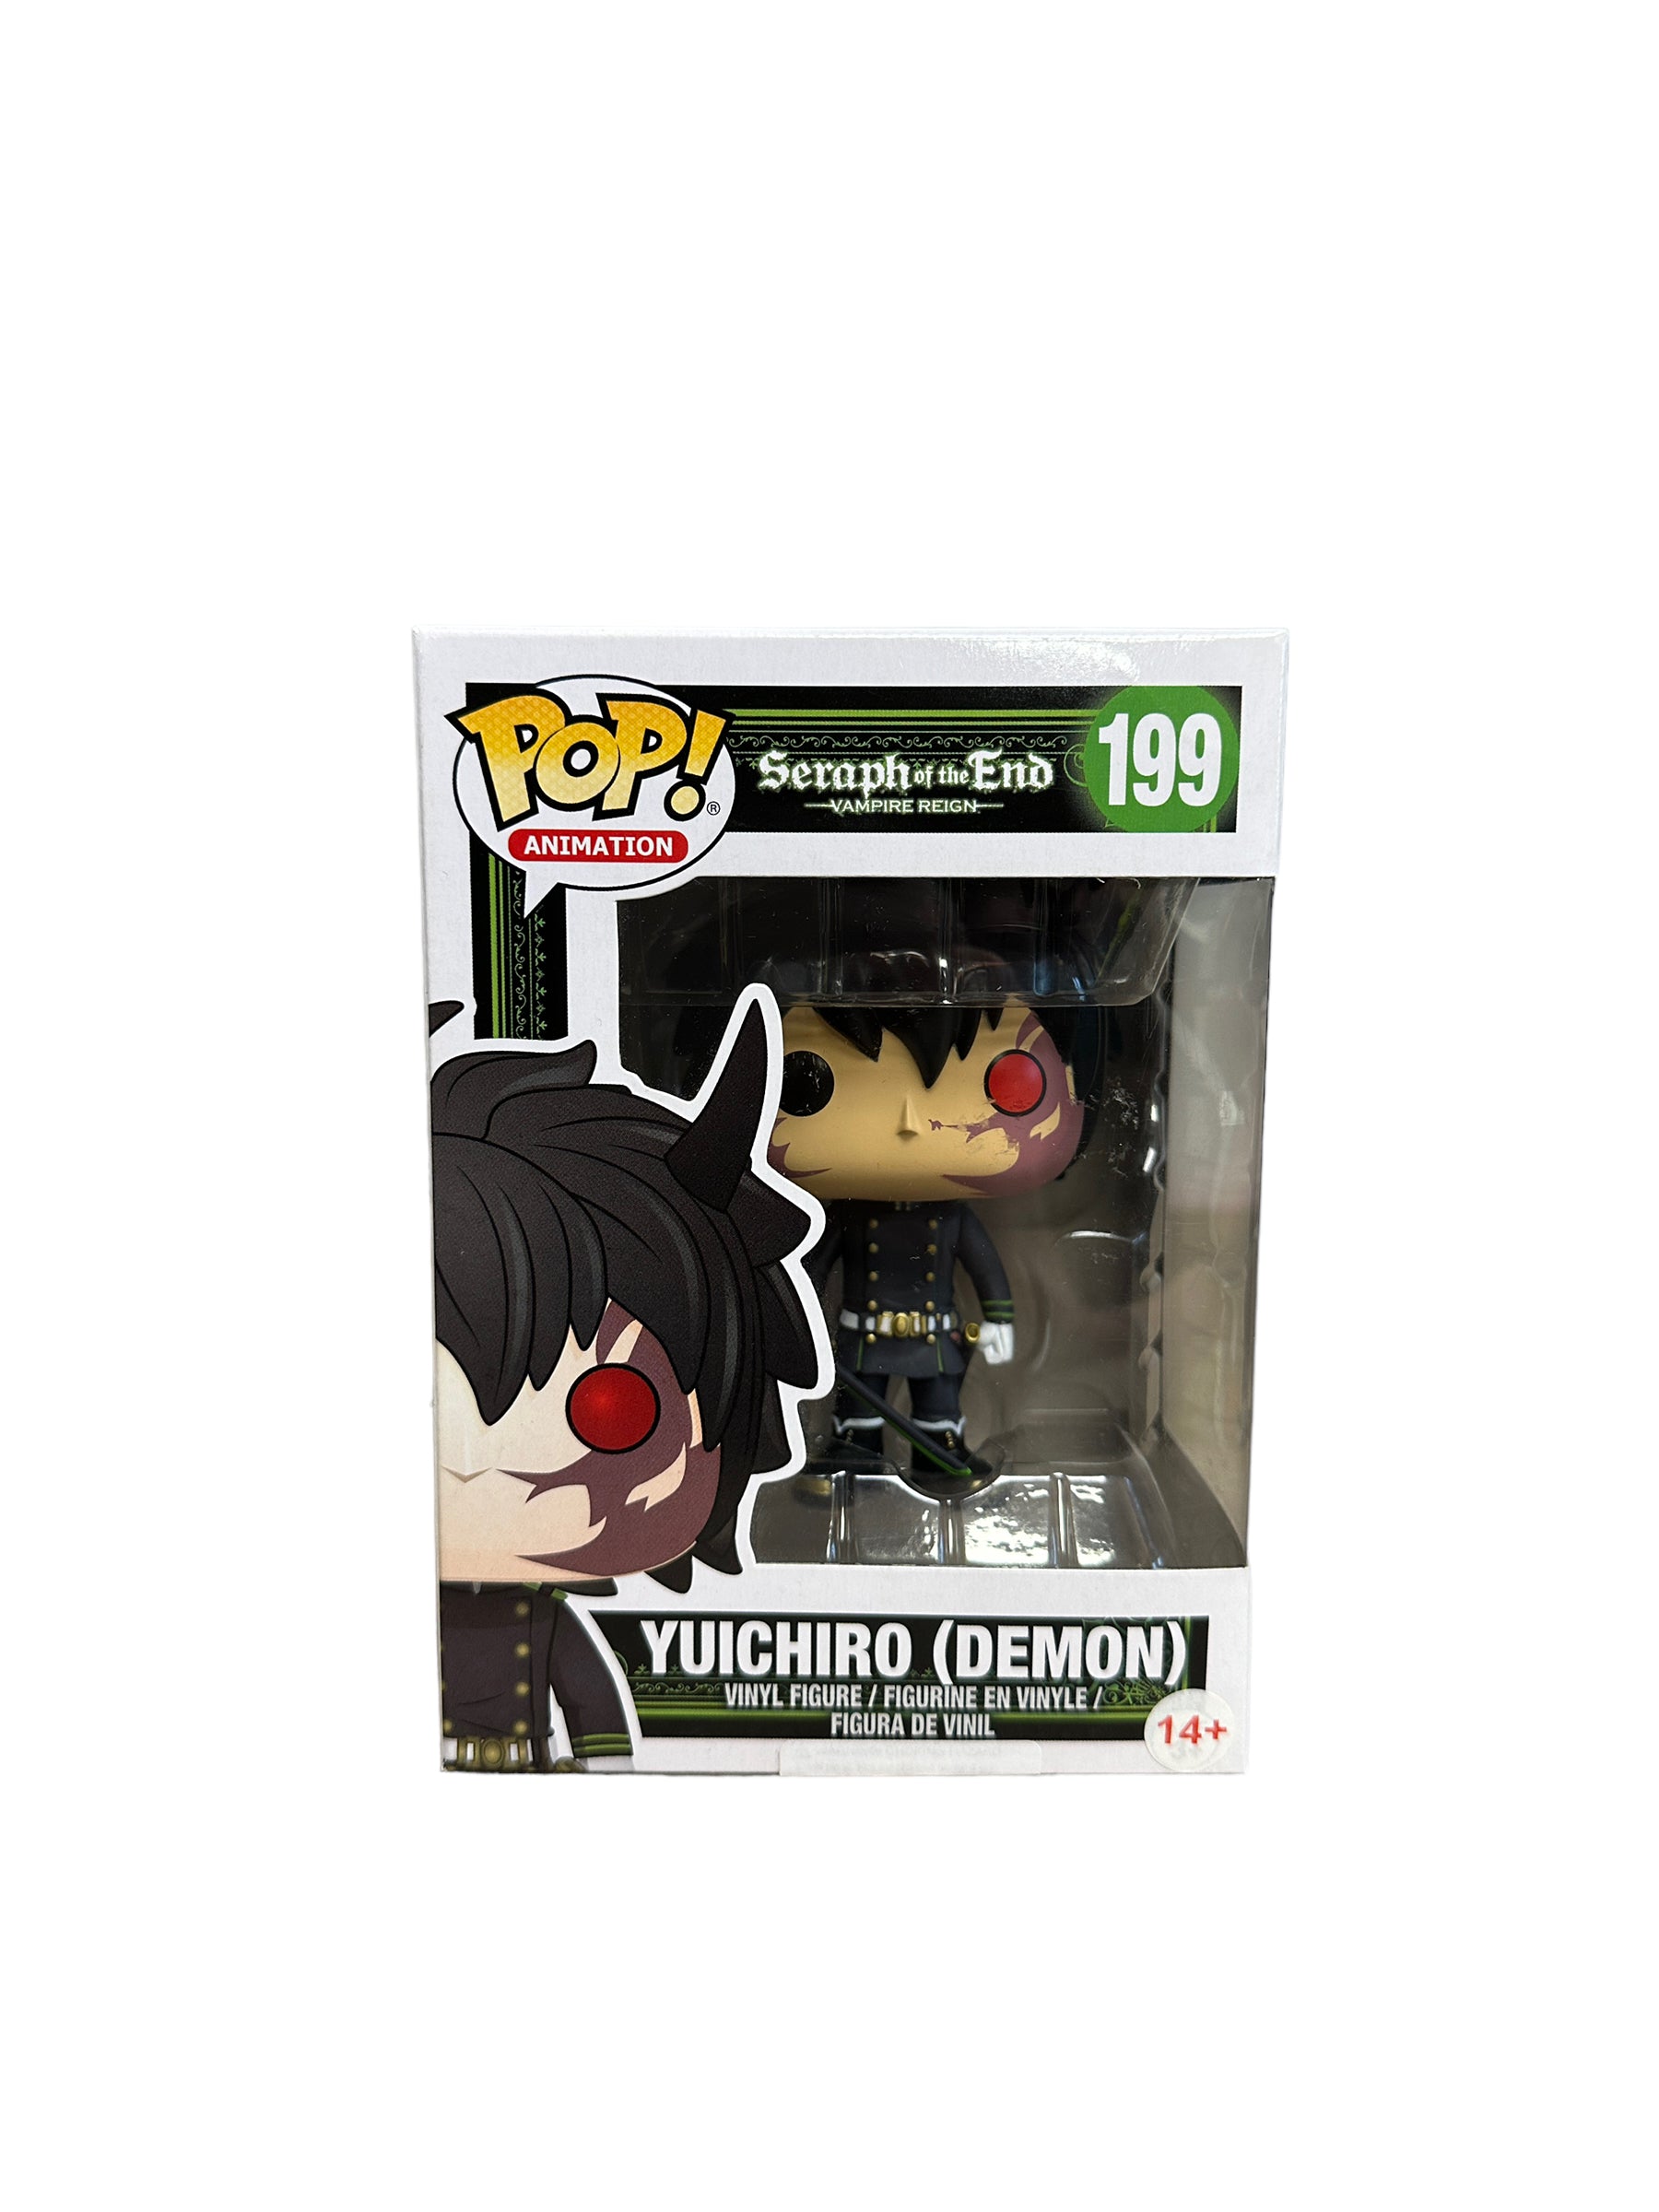 Yuichiro (Demon) #199 Funko Pop! - Seraph of the End: Vampire Reign - Condition 8/10